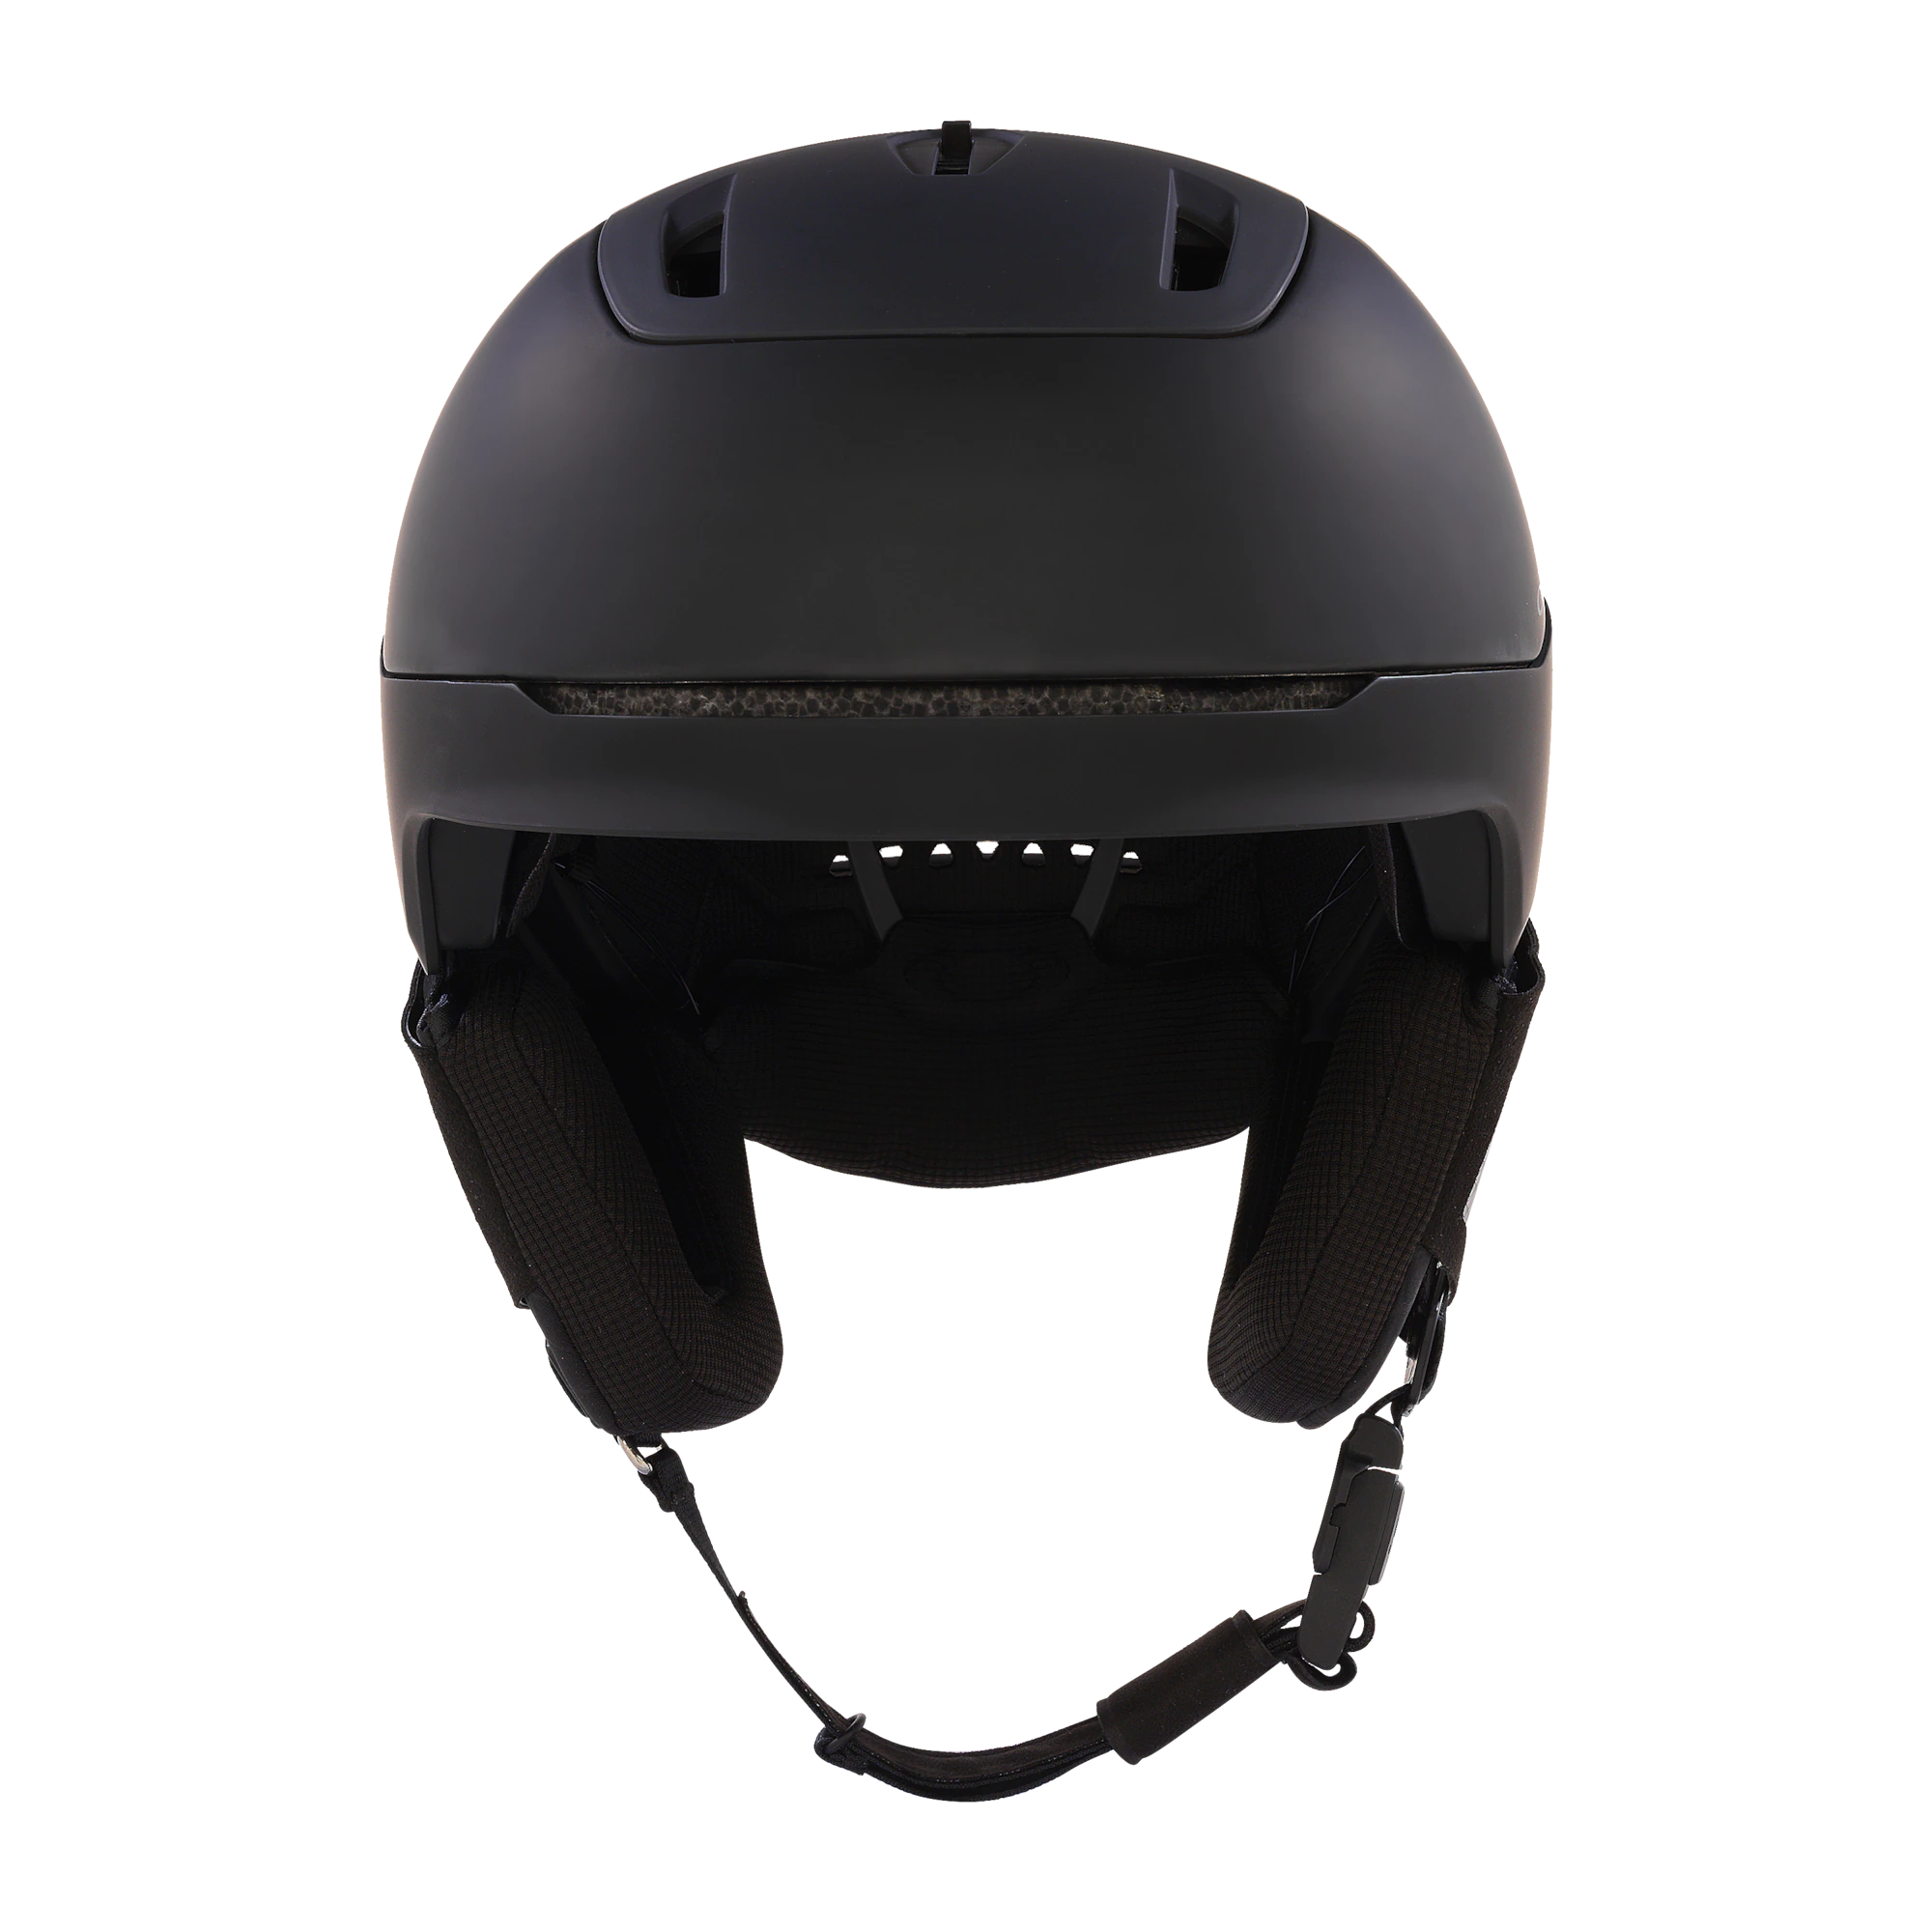 Oakly Mod 5 helmet blackout